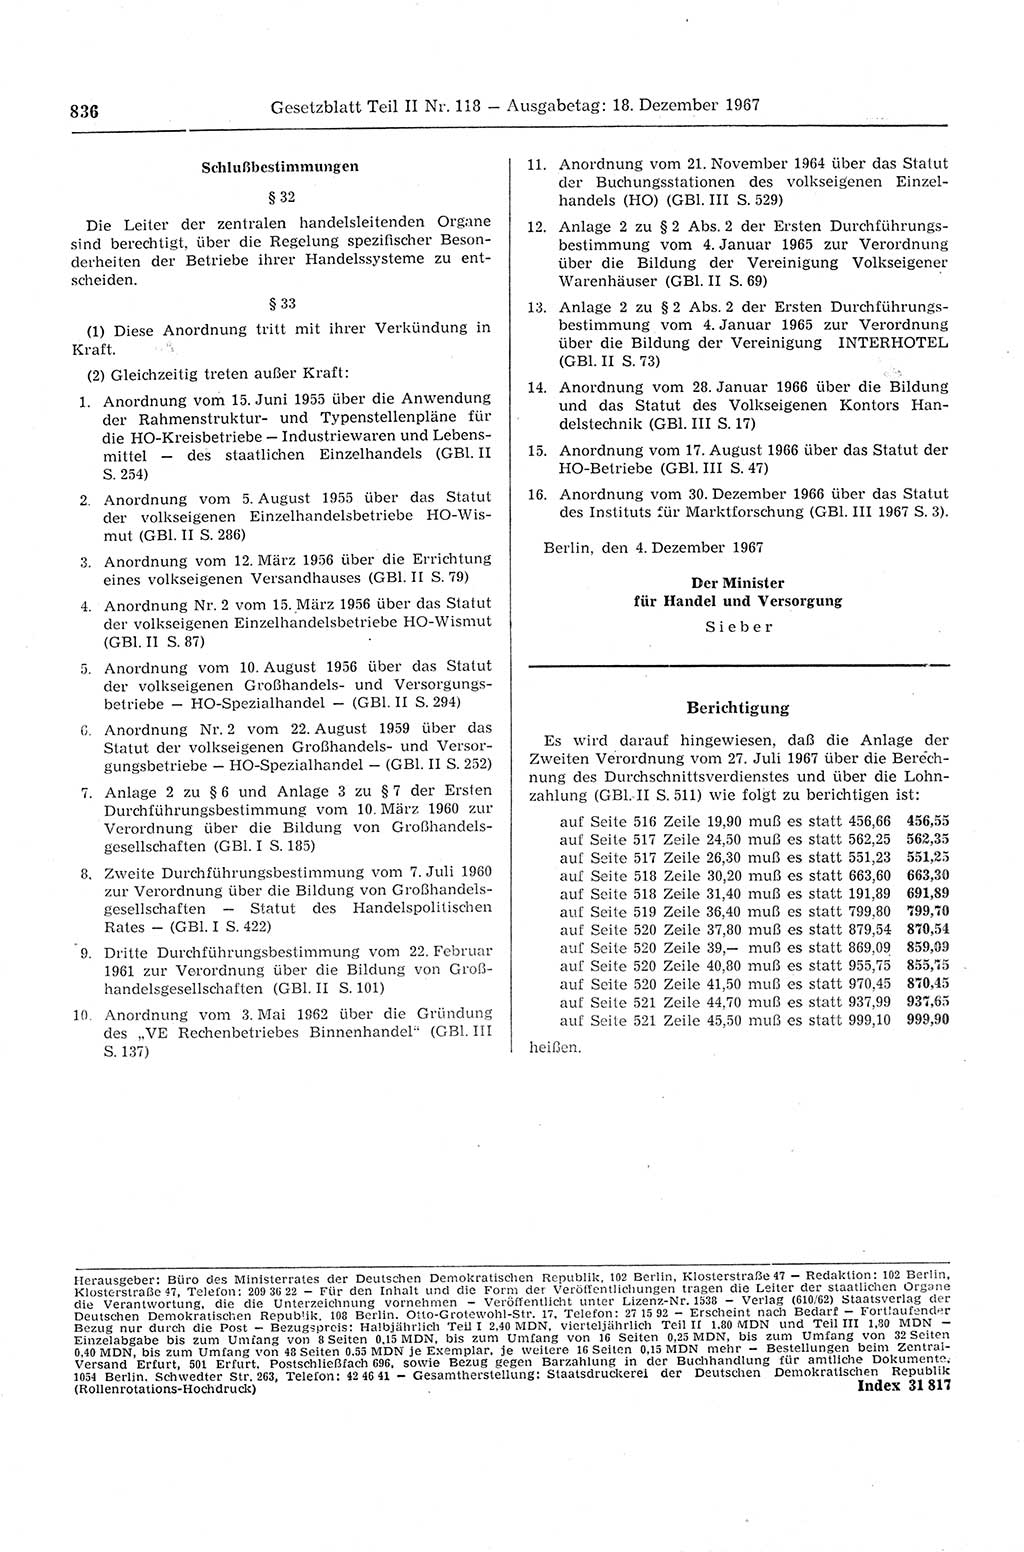 Gesetzblatt (GBl.) der Deutschen Demokratischen Republik (DDR) Teil ⅠⅠ 1967, Seite 836 (GBl. DDR ⅠⅠ 1967, S. 836)